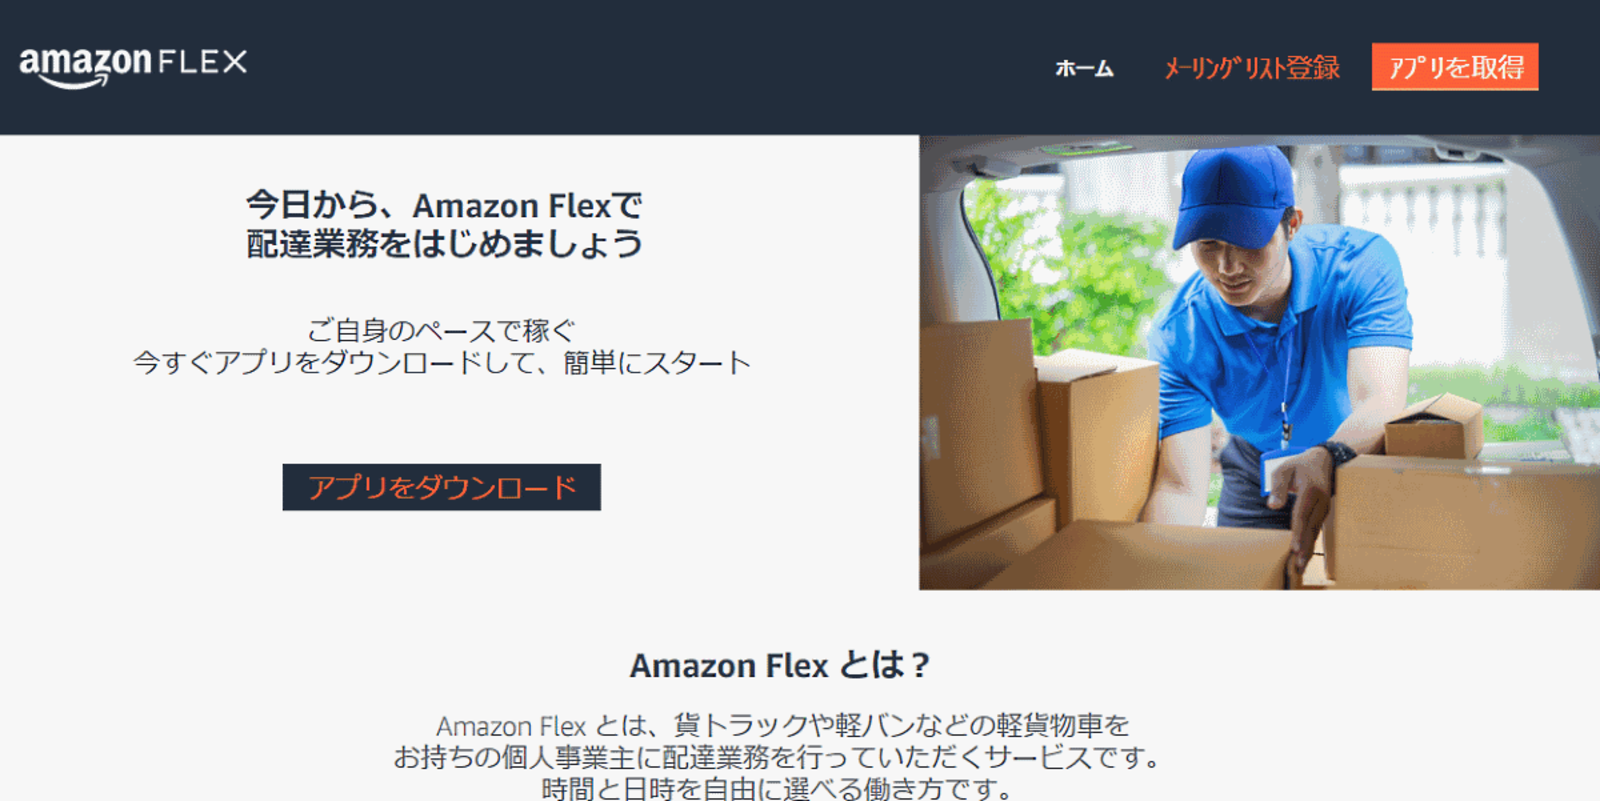 自社物流を広げるアマゾン 個人への配送委託制度 Amazon Flex を宮城県で導入 ネットショップ担当者フォーラム